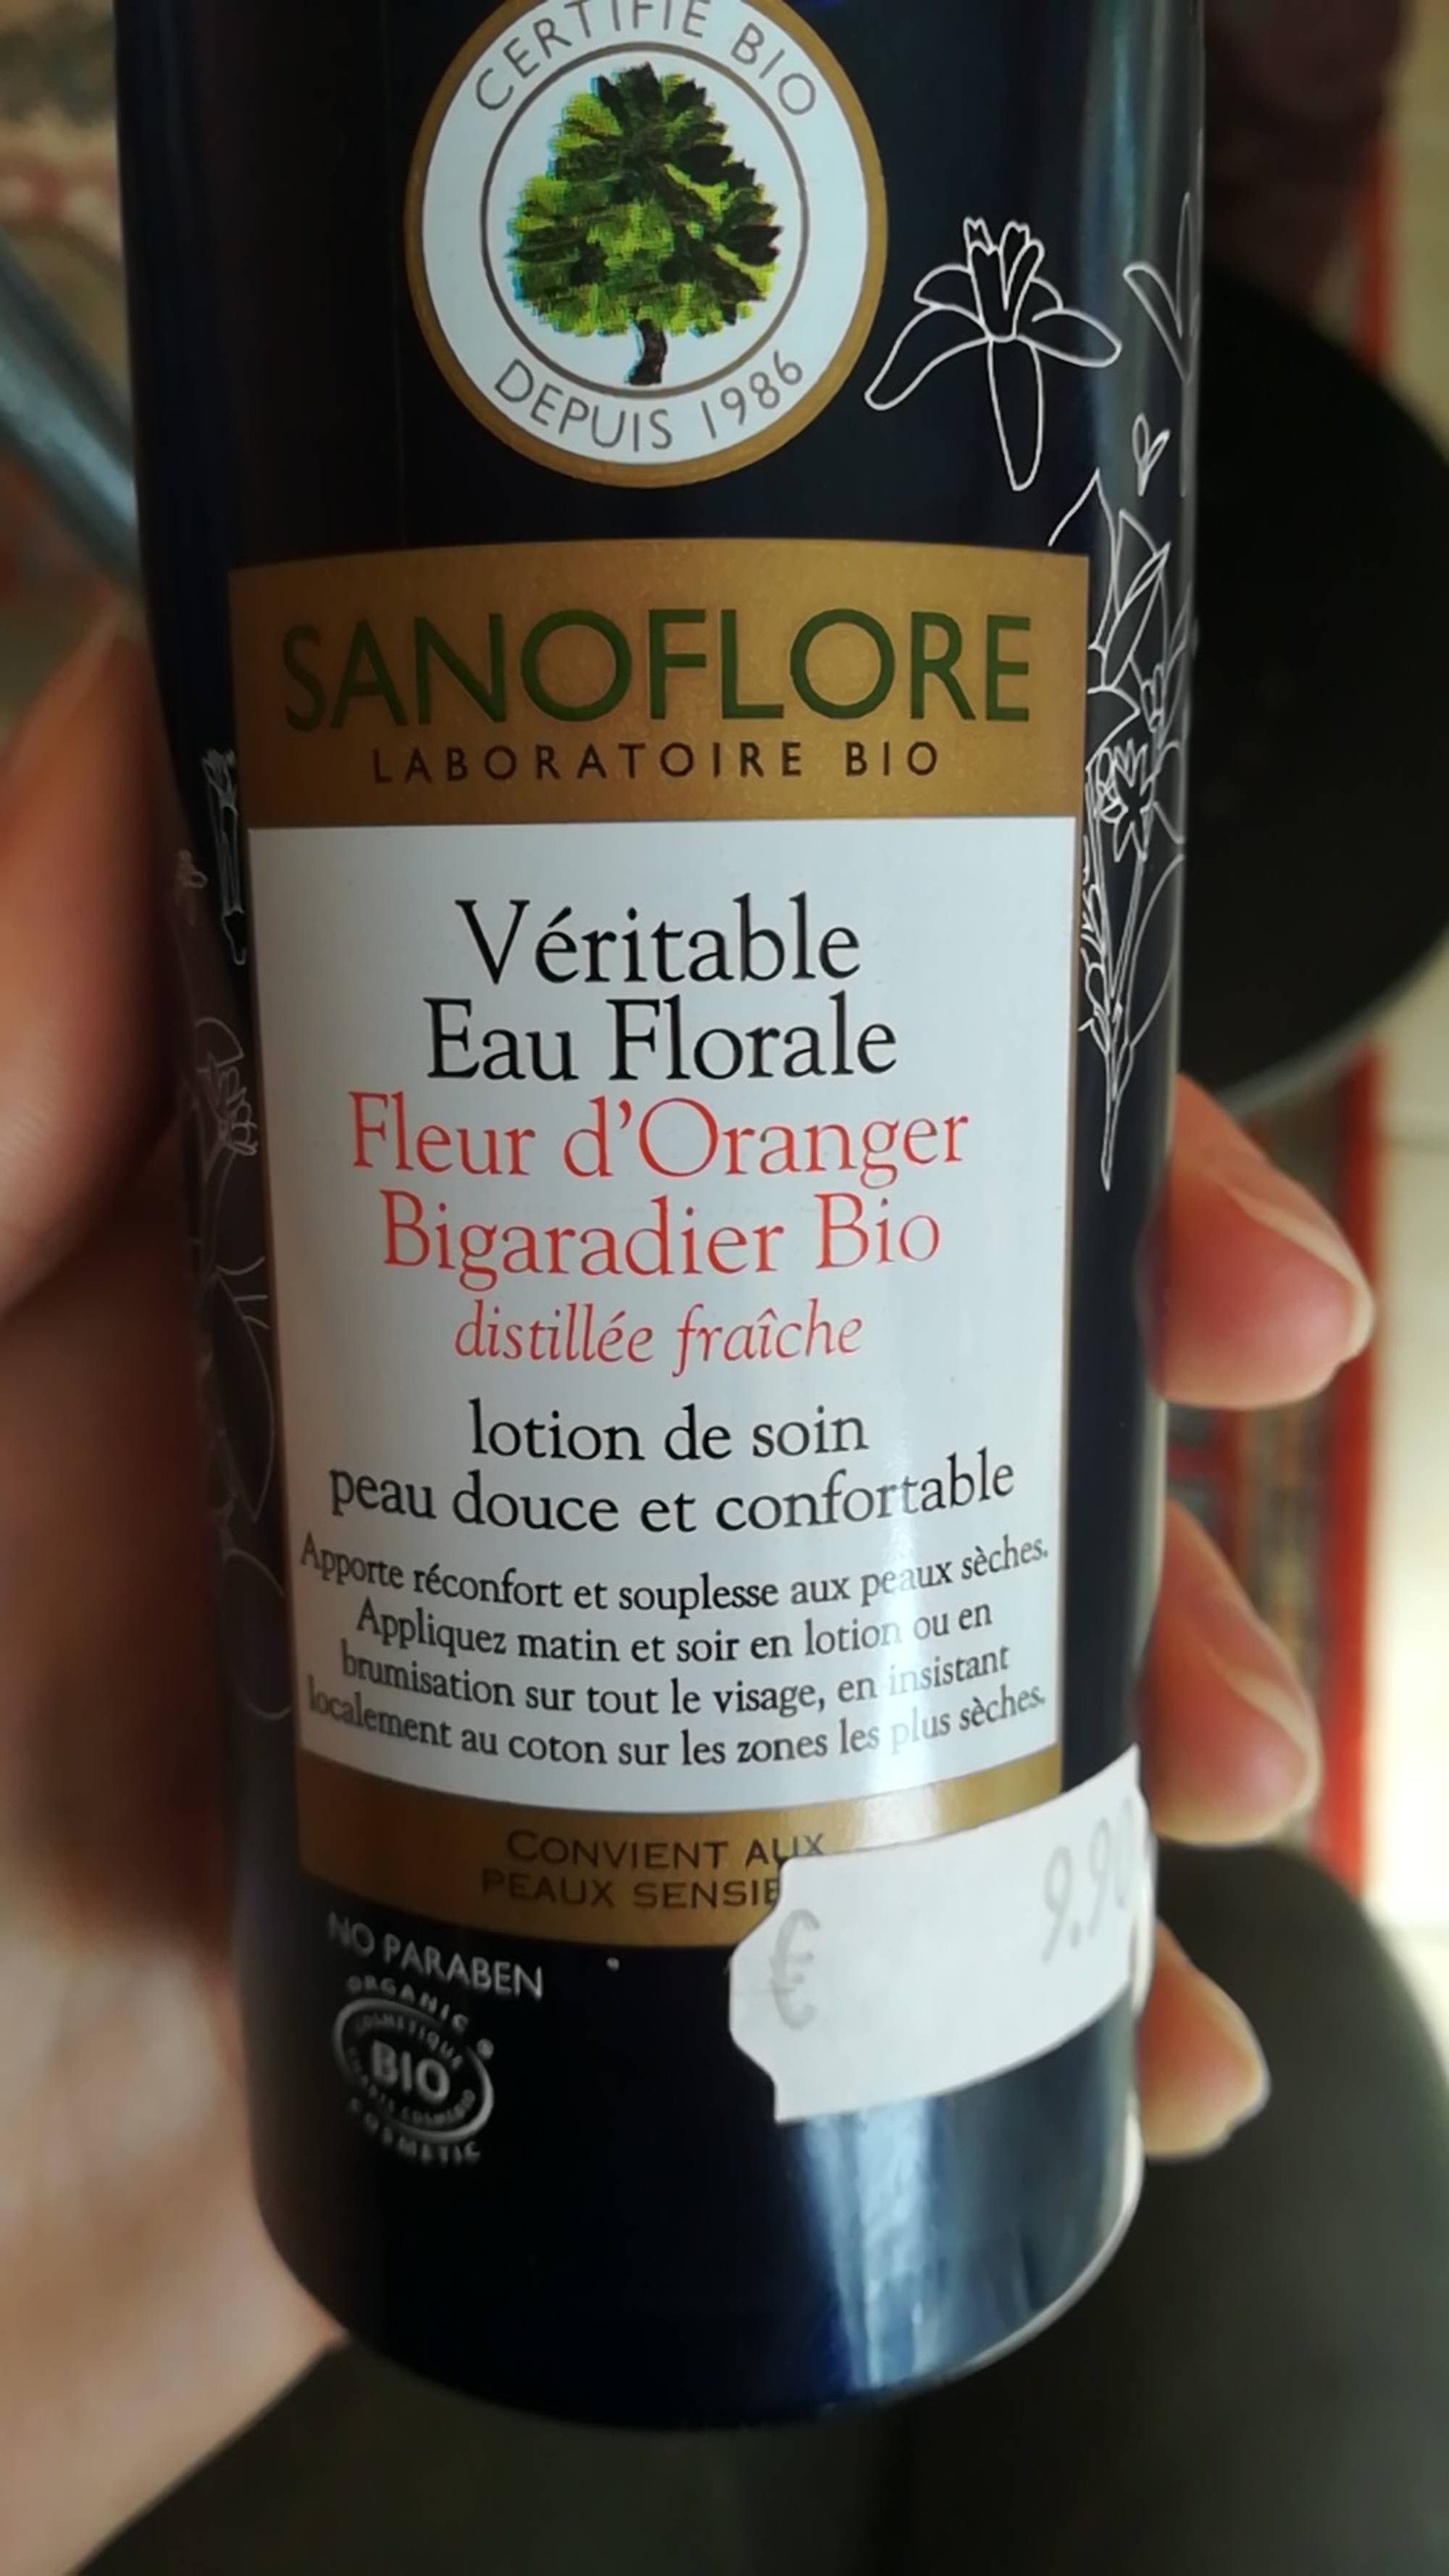 SANOFLORE - Véritable eau florale de fleur d'oranger bio